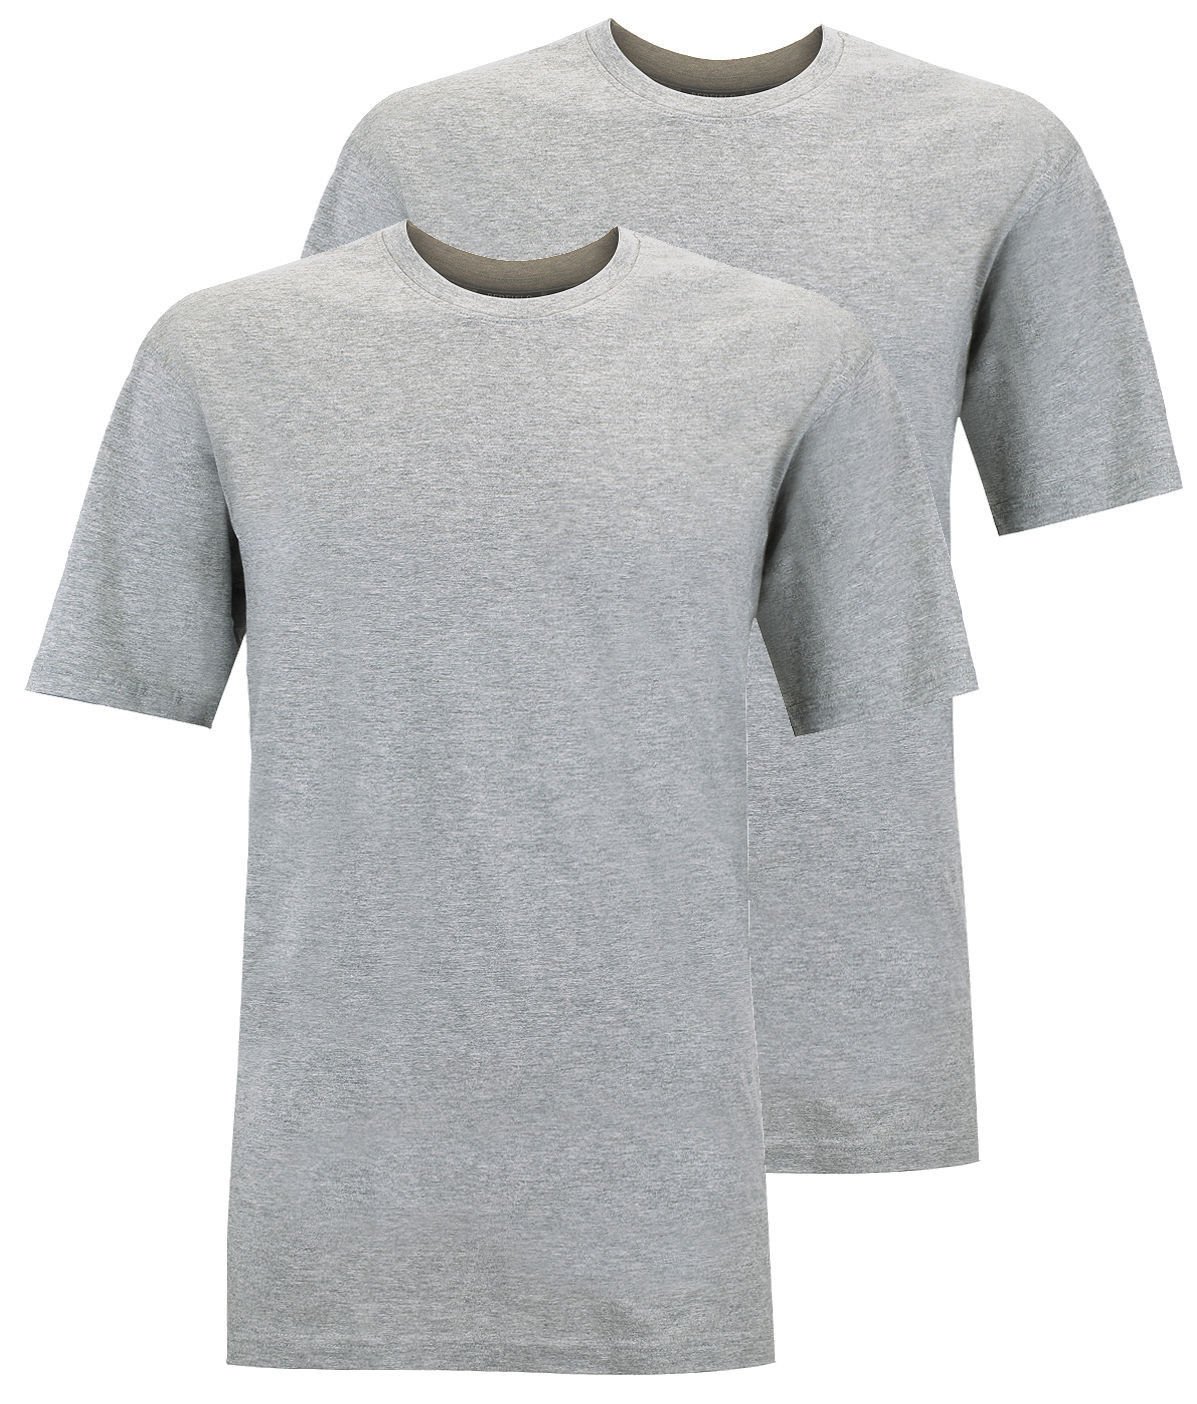 Redfield Doppelpack T-Shirt Übergröße grau Melange, Größe:8XL